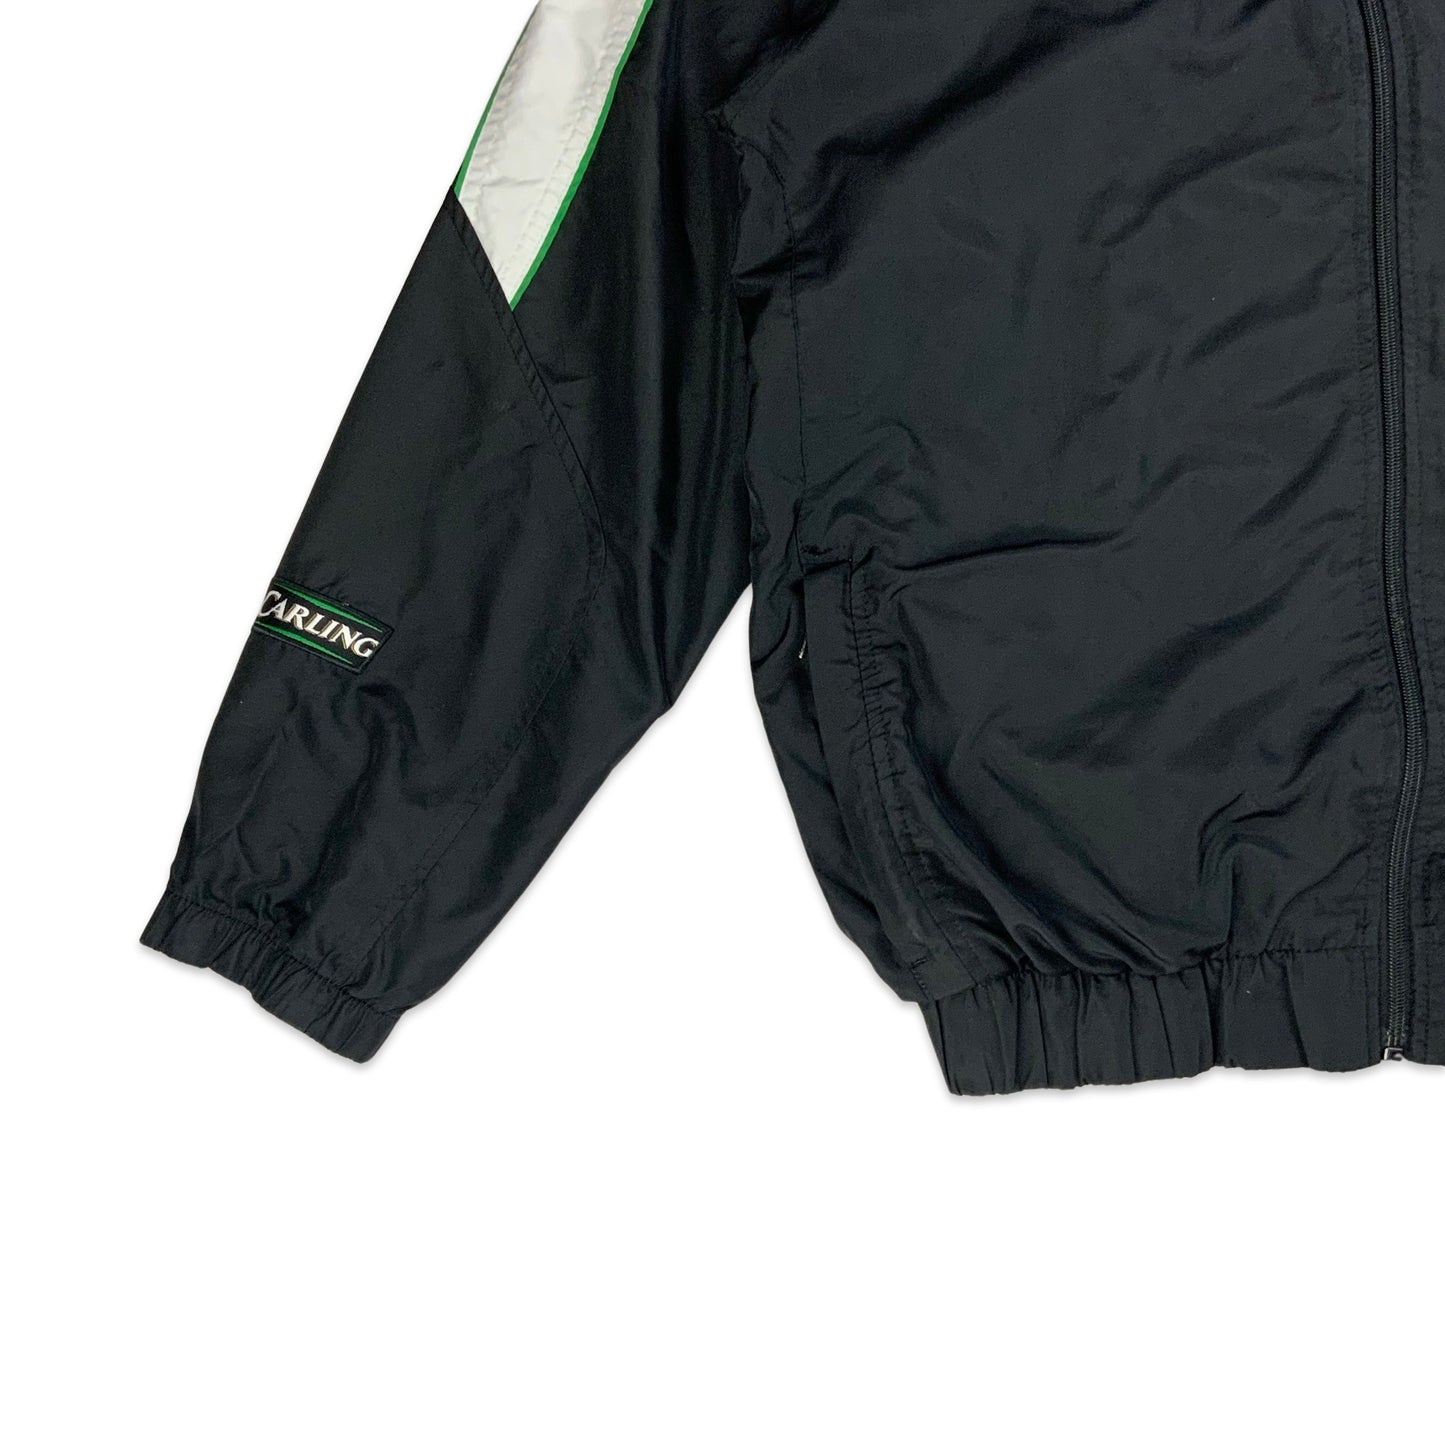 Preloved Umbro Celtic FC Track Jacket M L